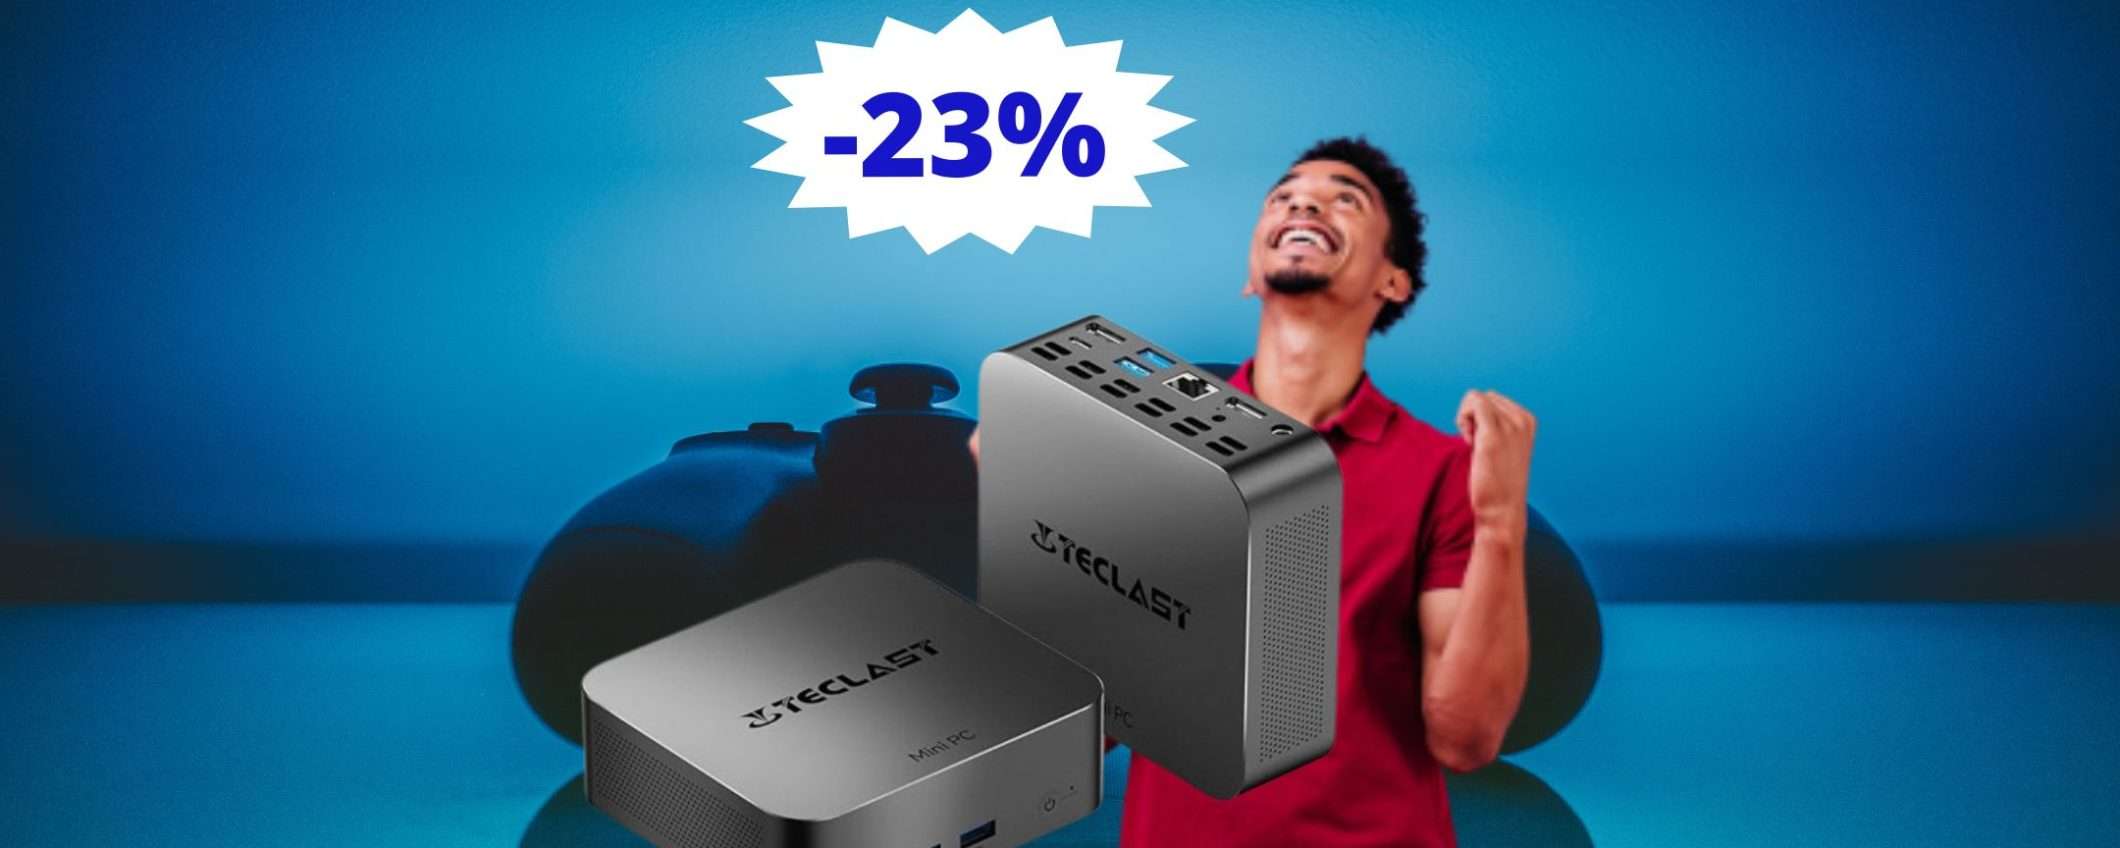 Mini PC TECLAST N20: ULTIMA possibilità su Amazon (-23%)